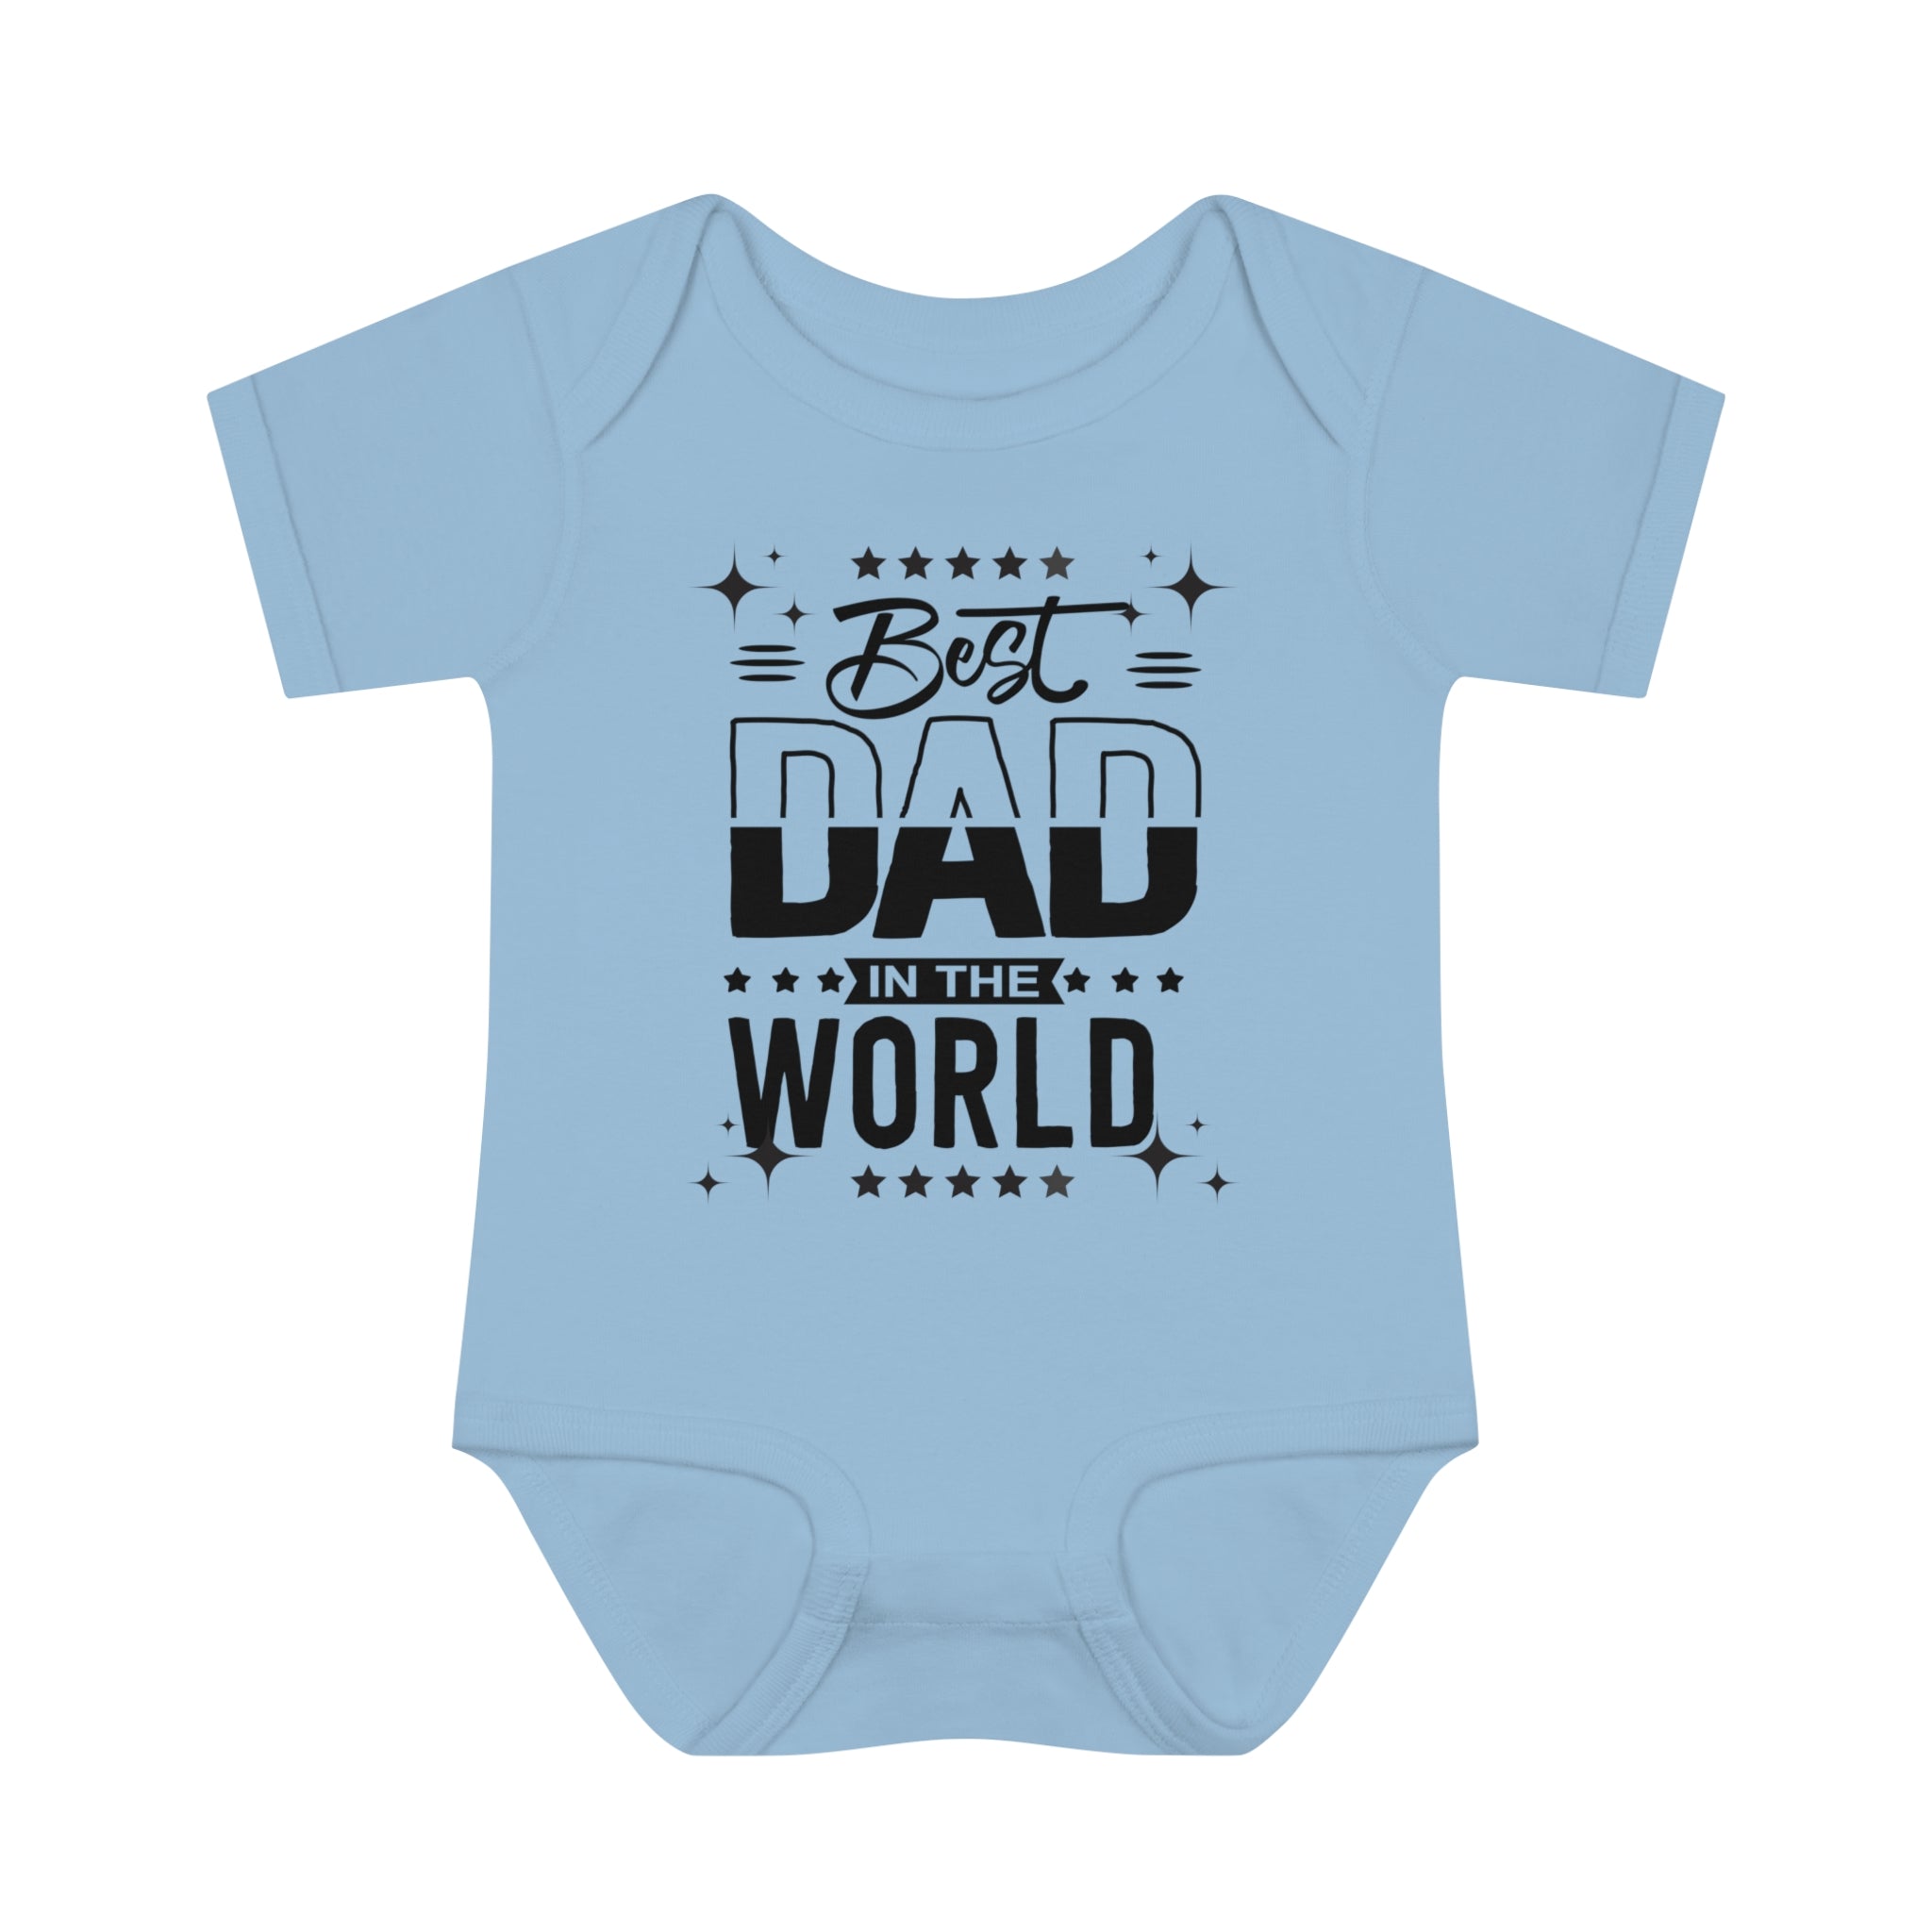 Best Dad In The World Baby Bodysuit